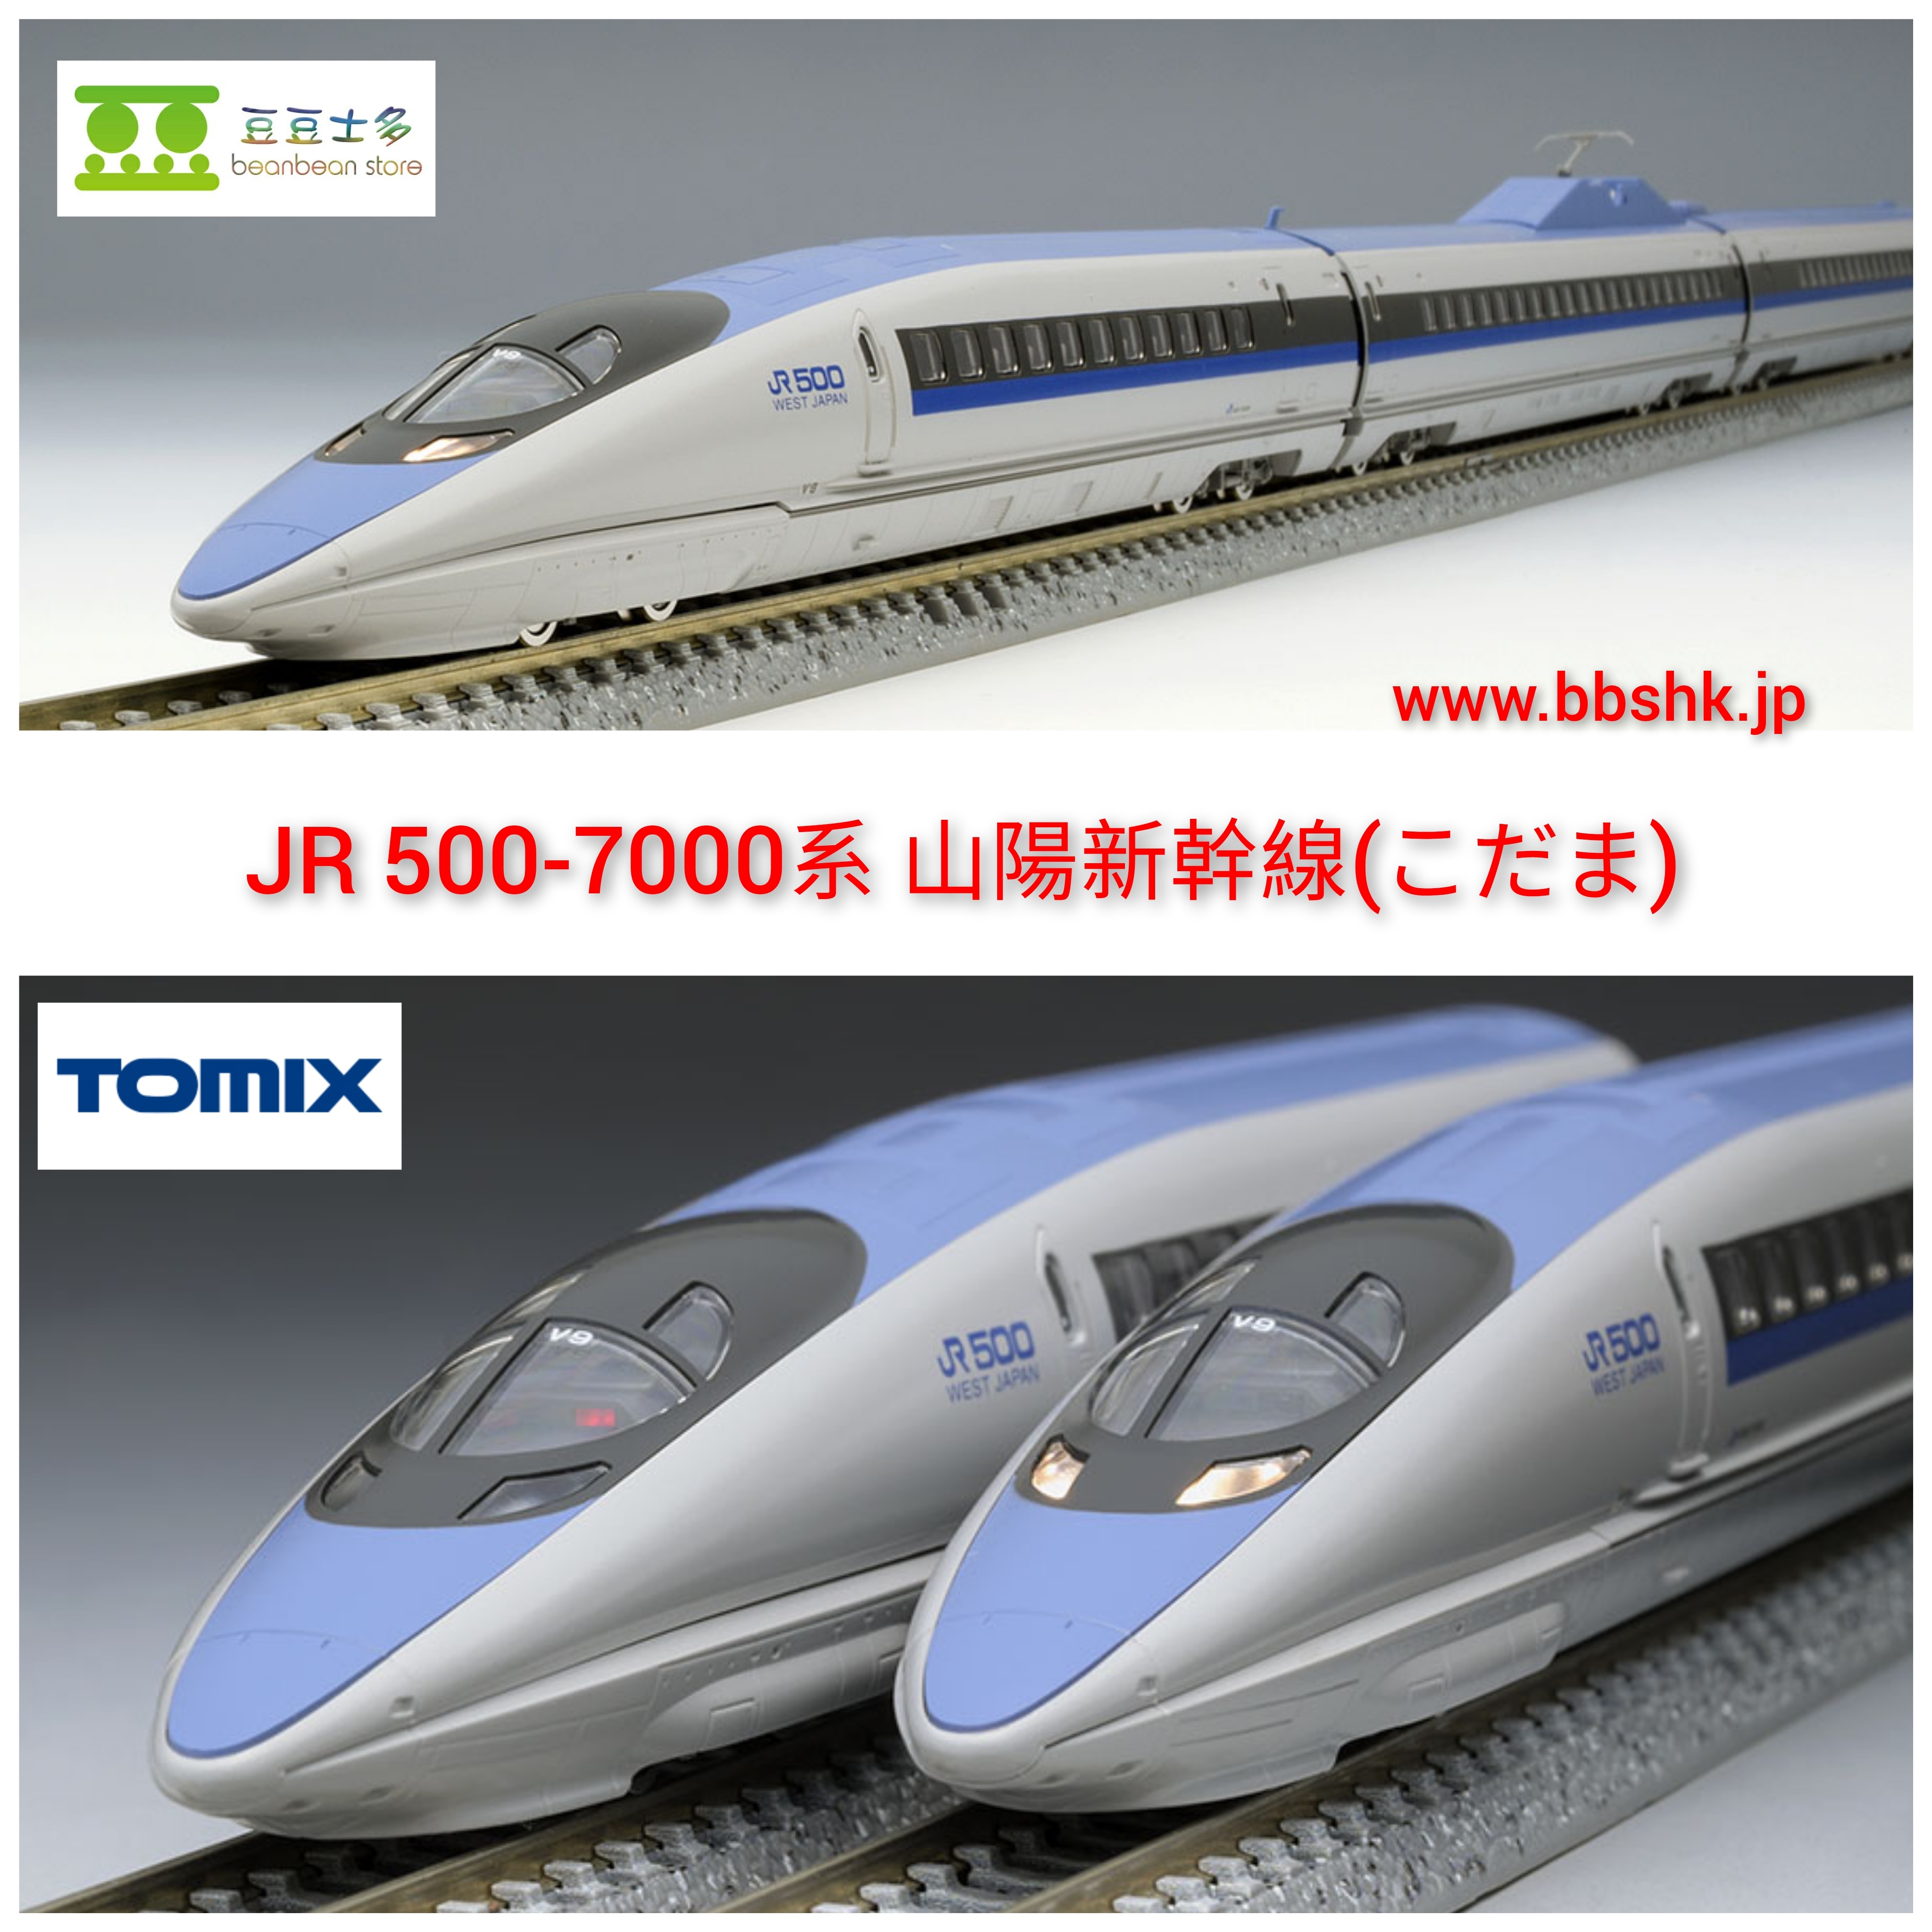 TOMIX Nゲージ 500 7000系 山陽新幹線 こだま セット 92815 鉄道模型 電車